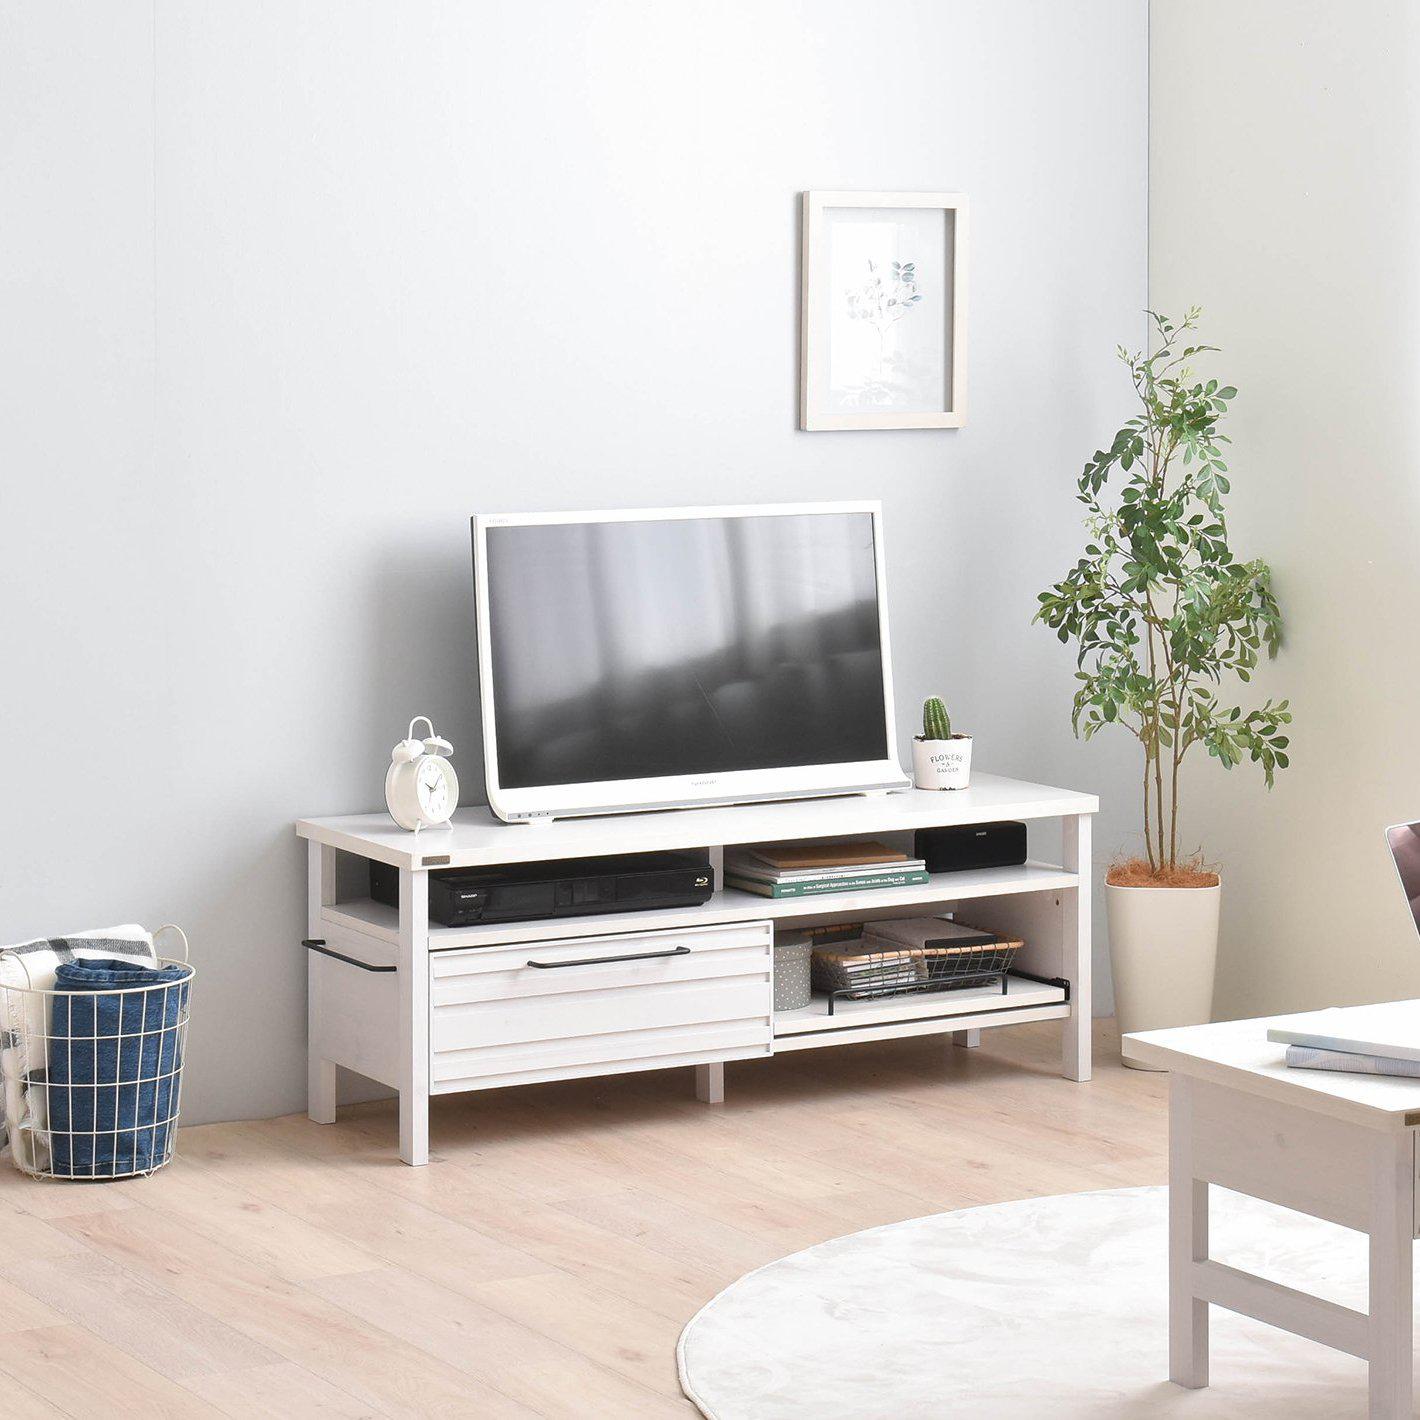 LAFIKA（ラフィカ）テレビボード（120cm幅）・送料無料